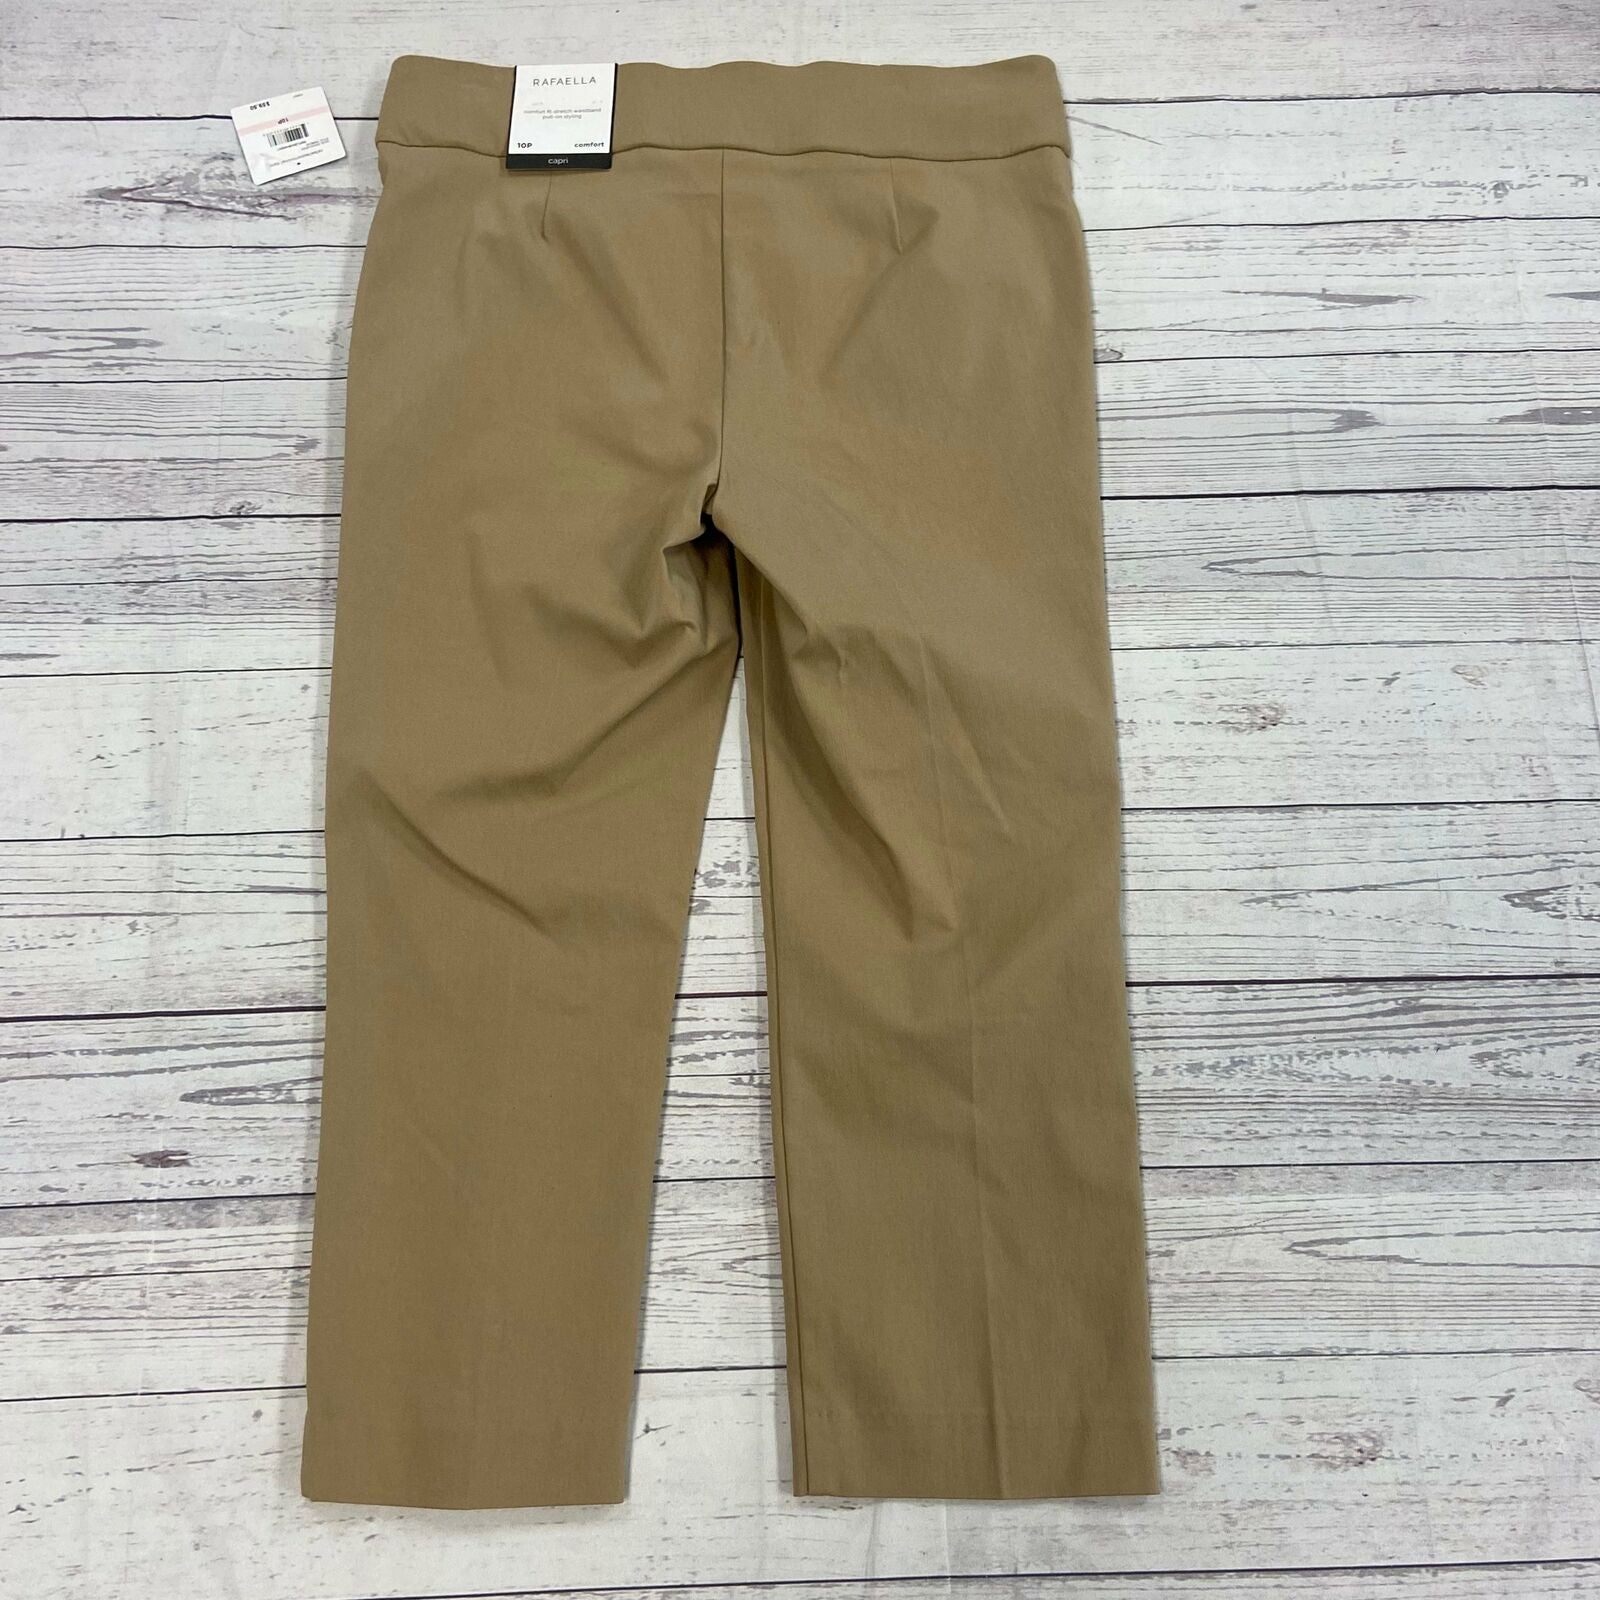 Rafaela Comfort Khaki Capri Pants Woman's Size 10 P NEW - beyond exchange